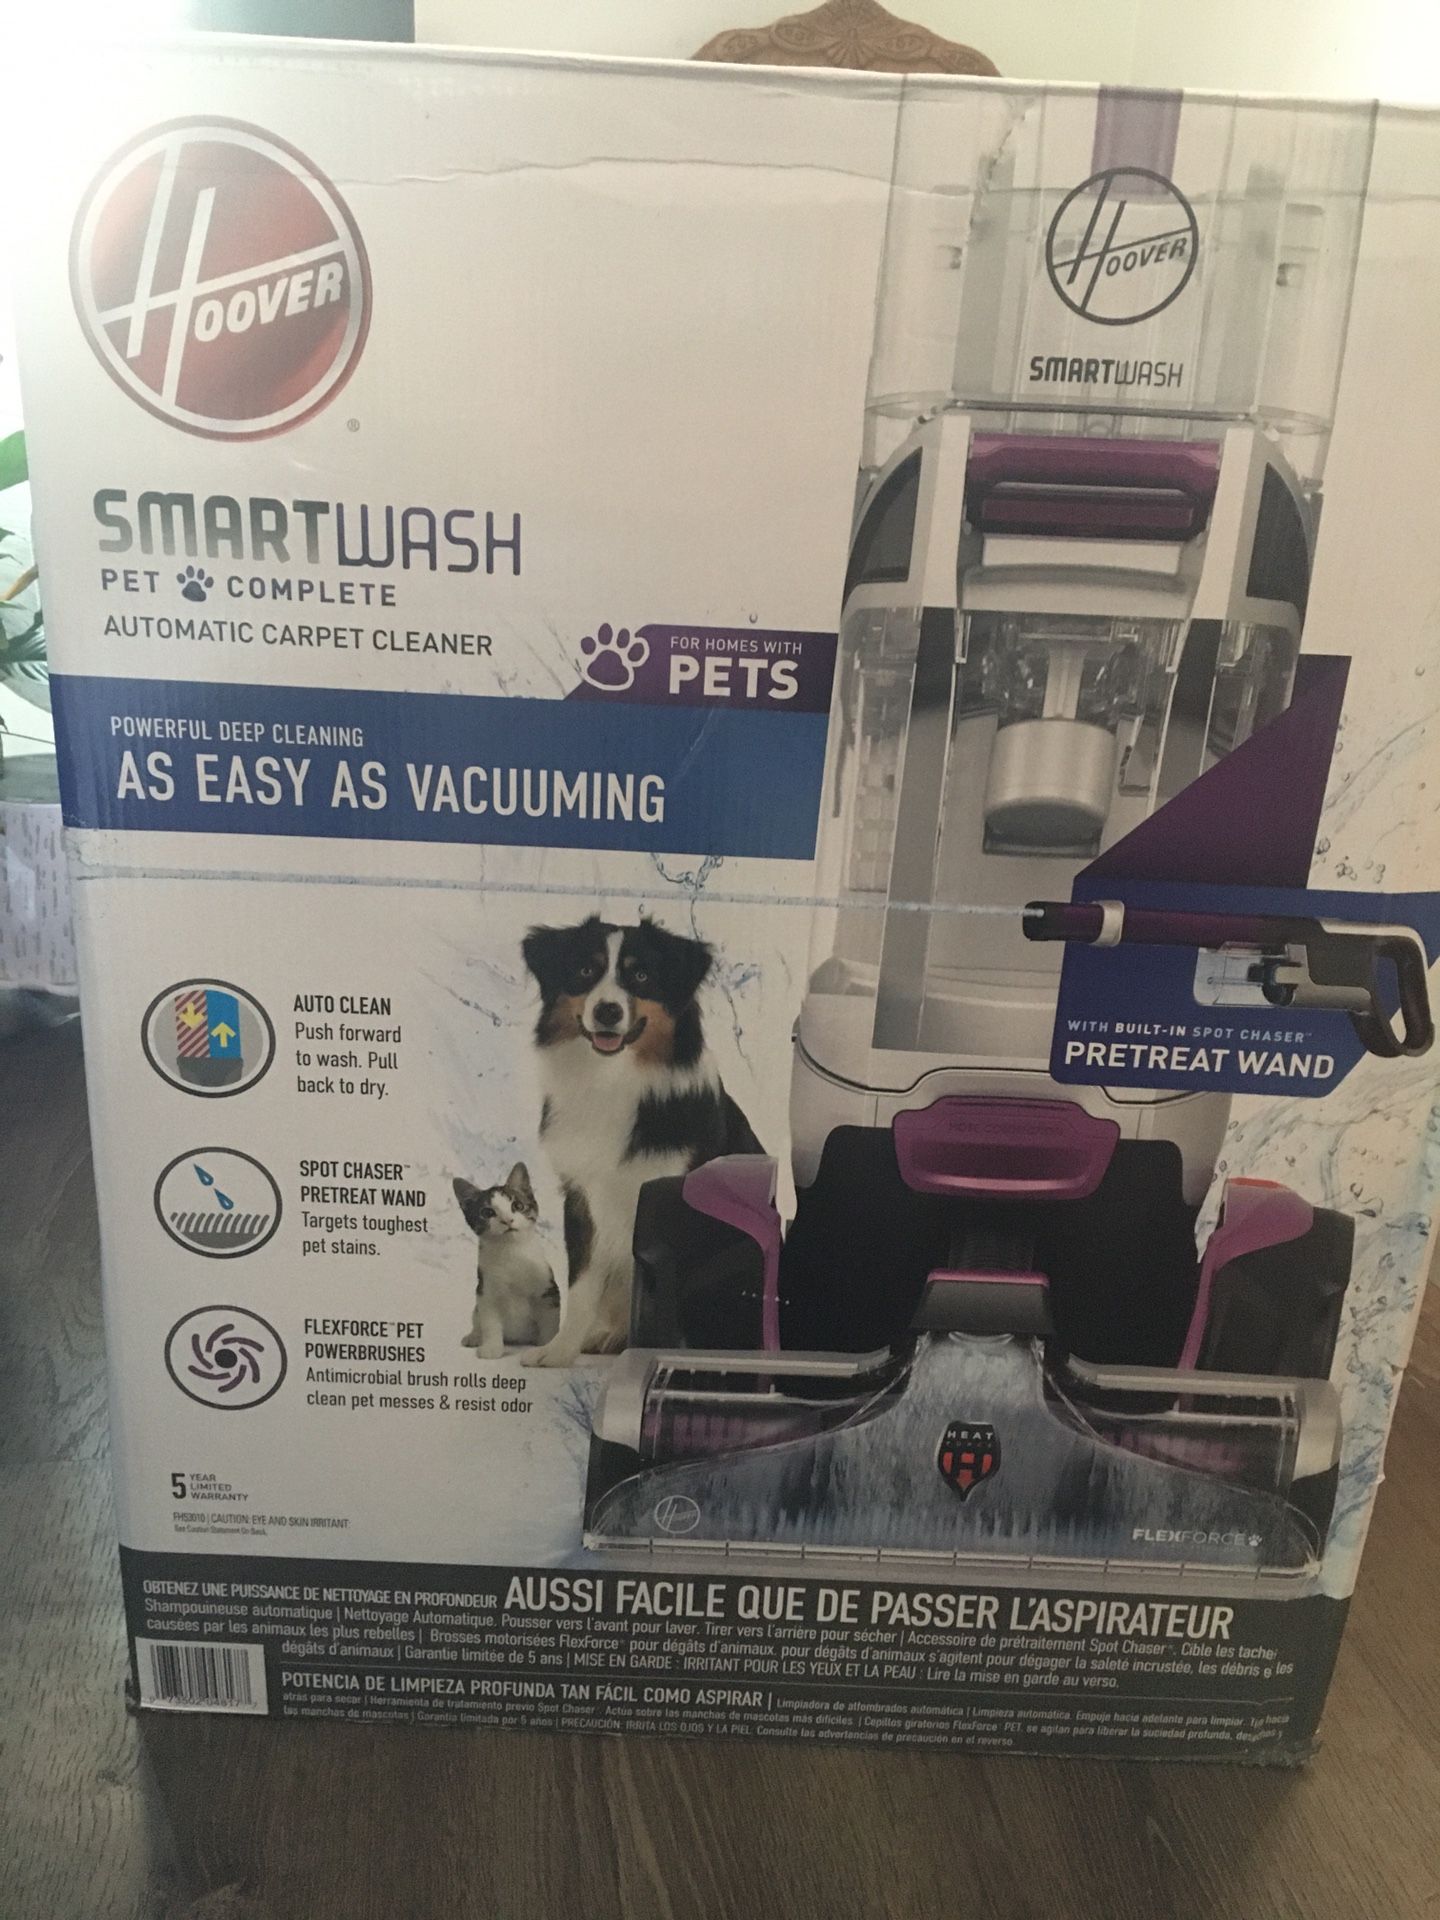 Hoover Smartwash (Pets) Carpet Cleaner